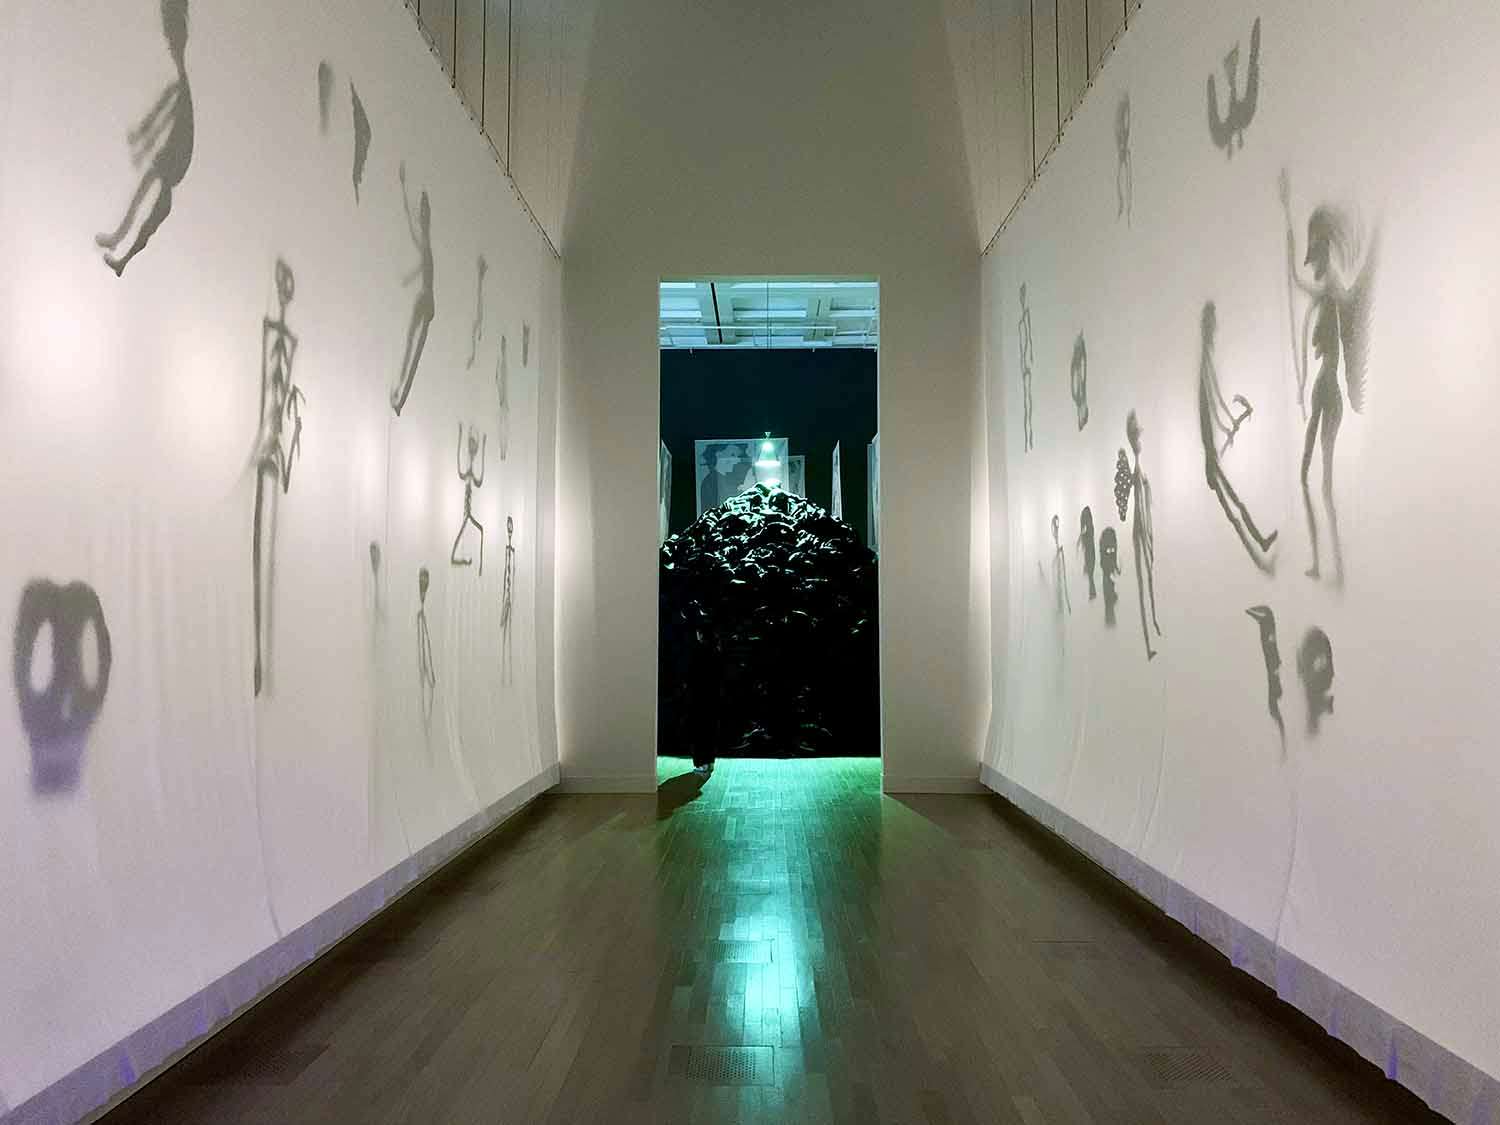 ボルタンスキー過去最大規模の回顧展、国立新美術館で開幕。「Lifetime